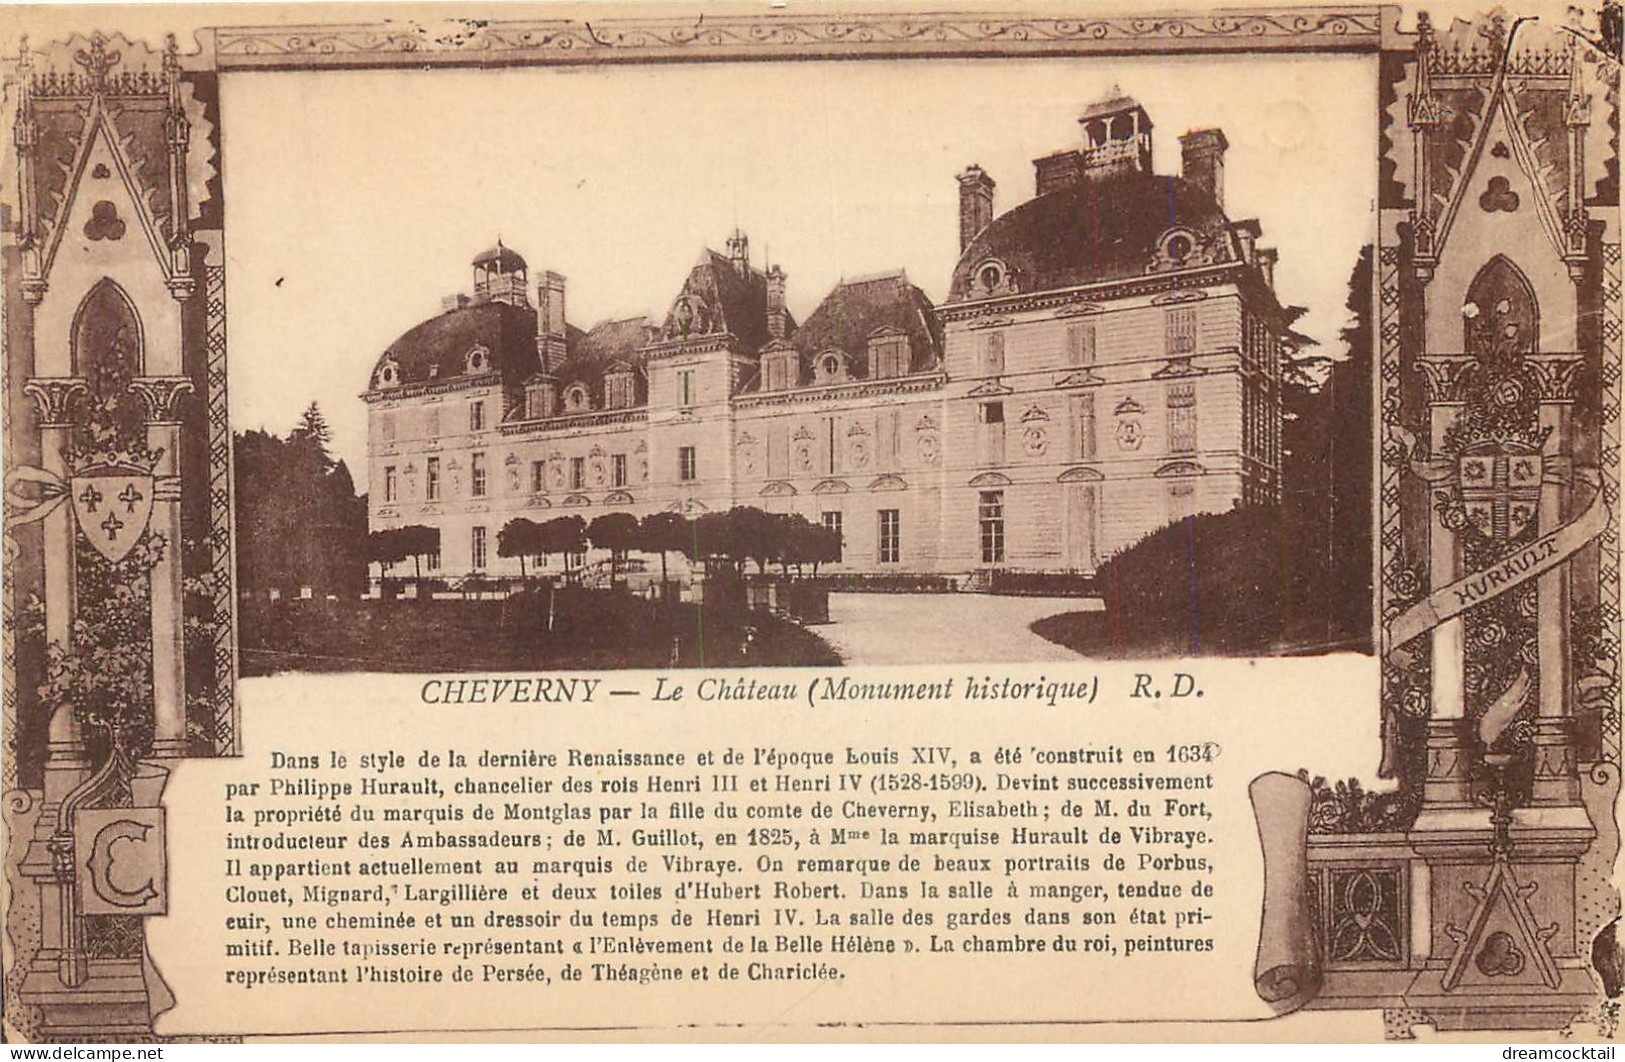 (S) Superbe LOT n°7 de 50 cartes postales anciennes France régionalisme